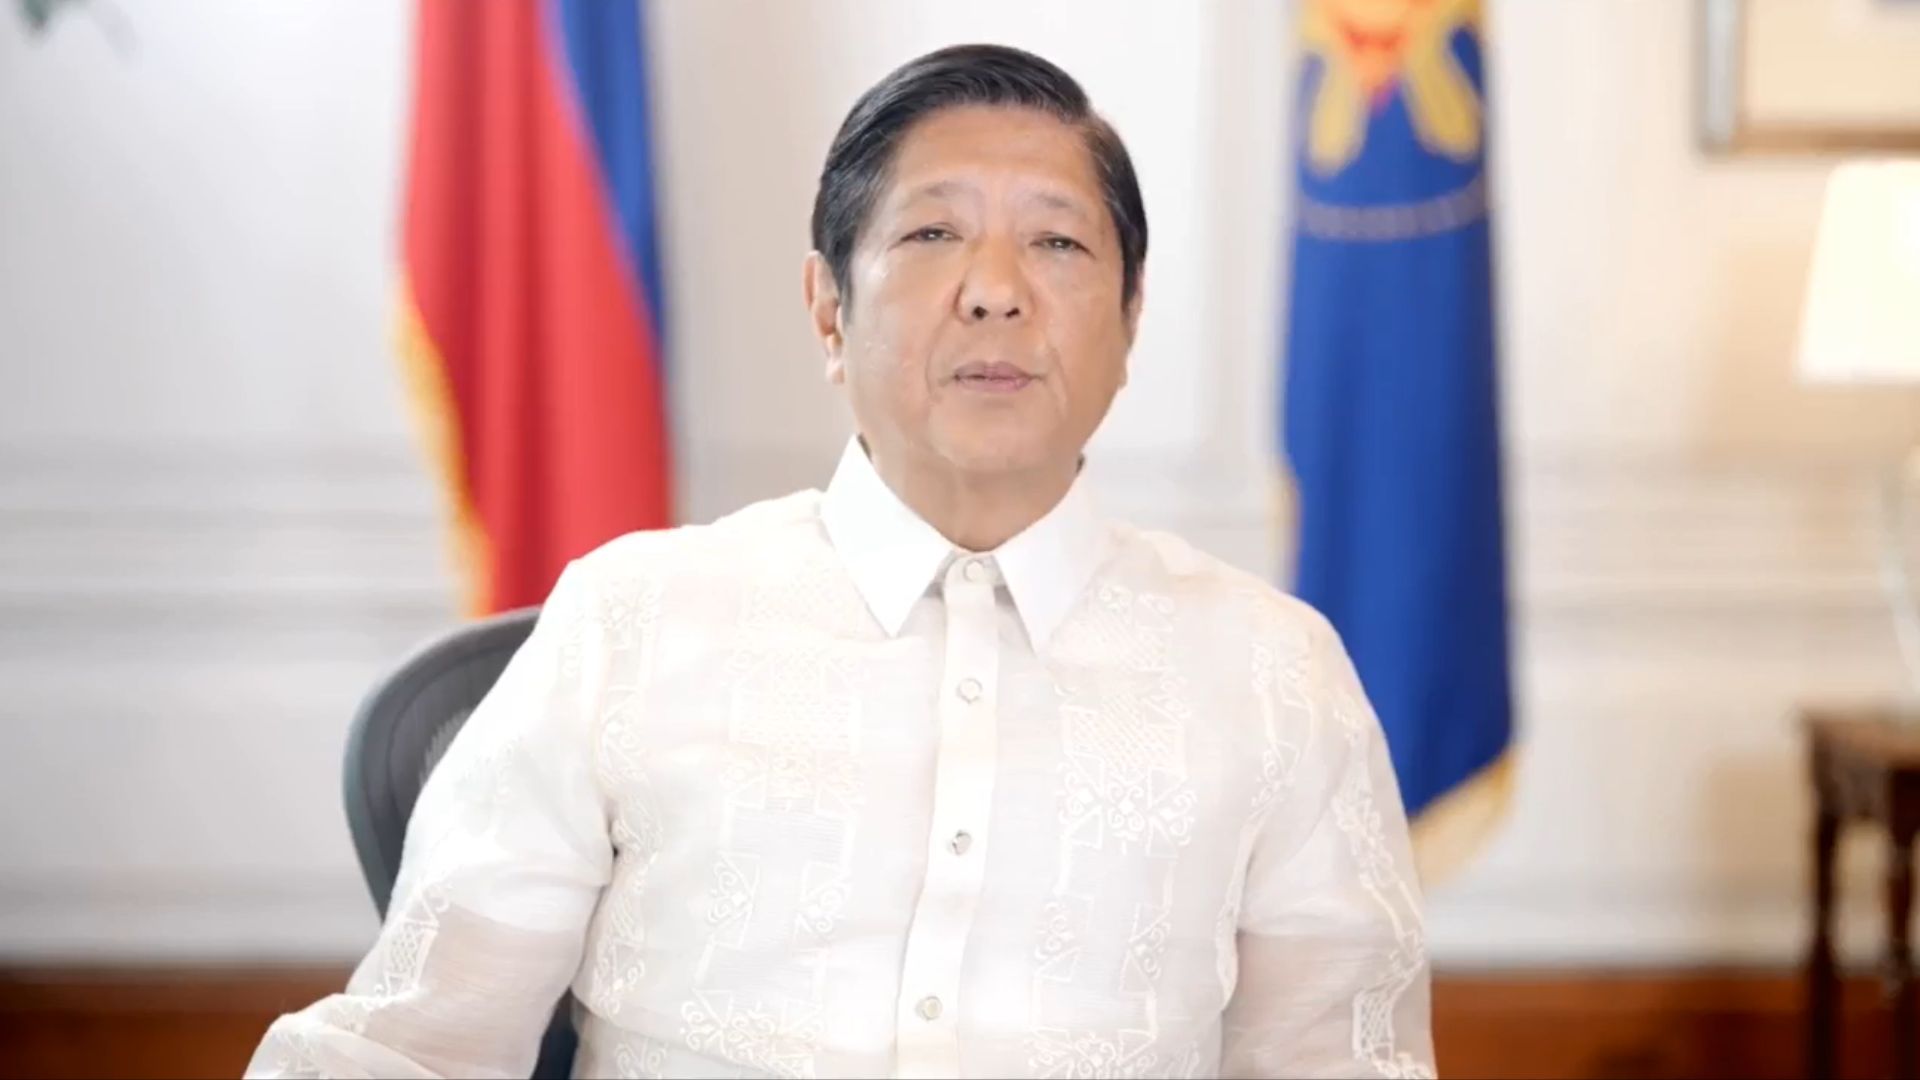 Pangulong Marcos kinilala ang dedikasyon ng mga manggagawa ng gobyerno sa pagdiriwang ng anibersaryo ng Philippine Civil Service